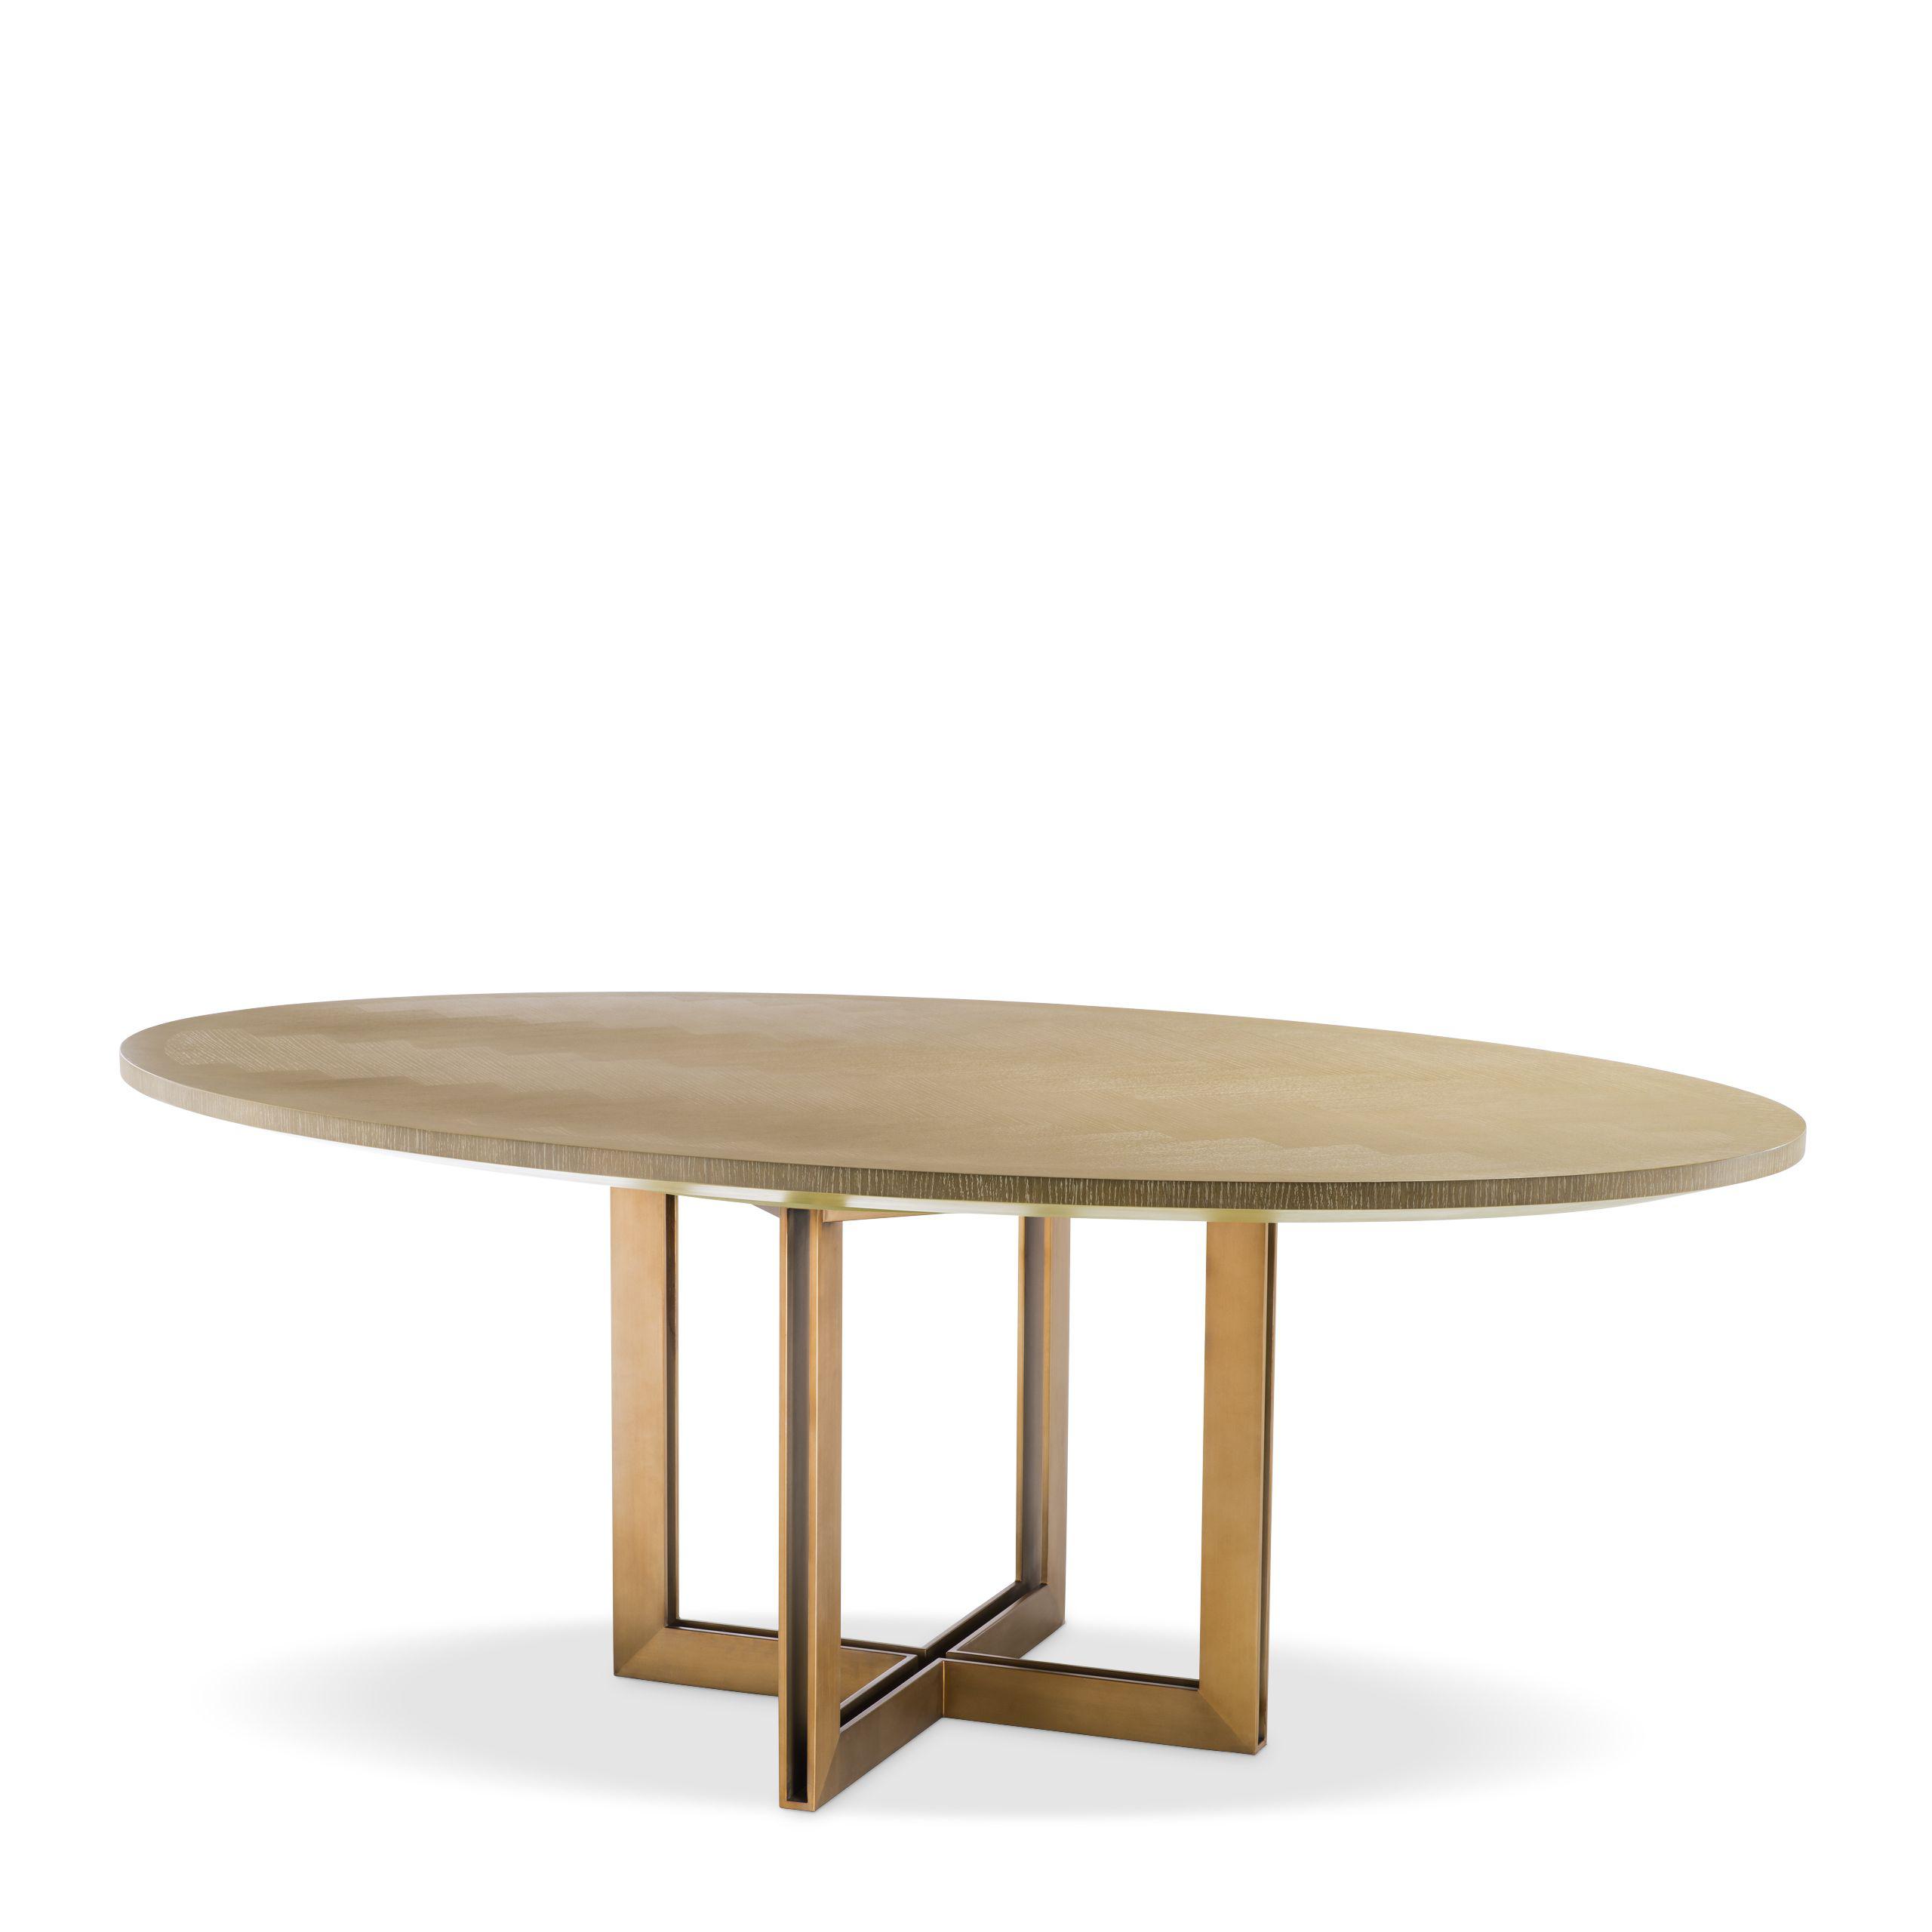 Купить Обеденный стол Dining Table Melchior oval в интернет-магазине roooms.ru